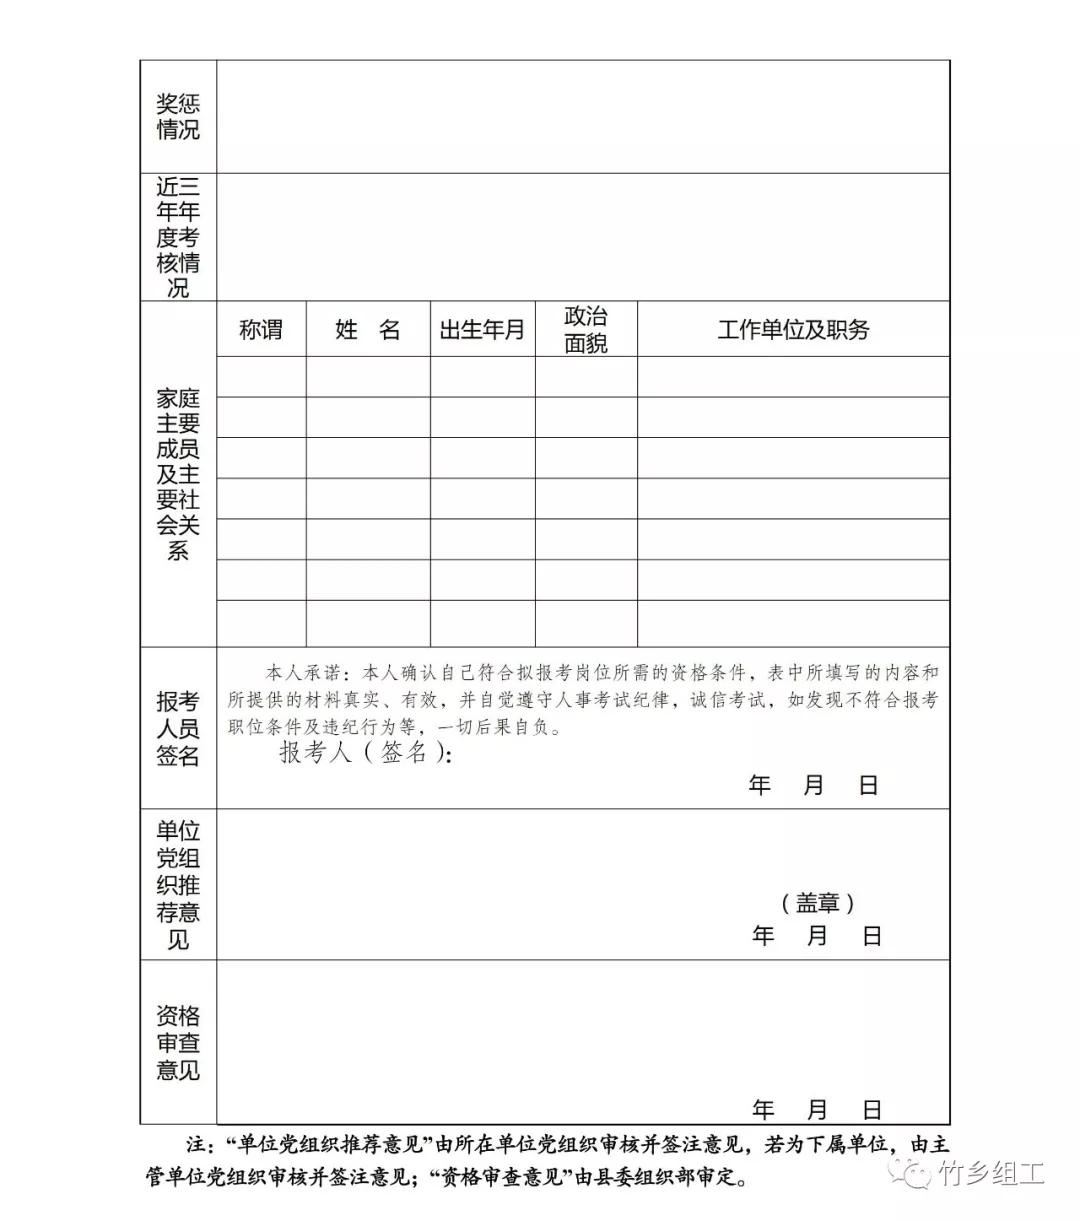 大竹县公开遴选乡镇副科级领导干部人选的公告6.jpg